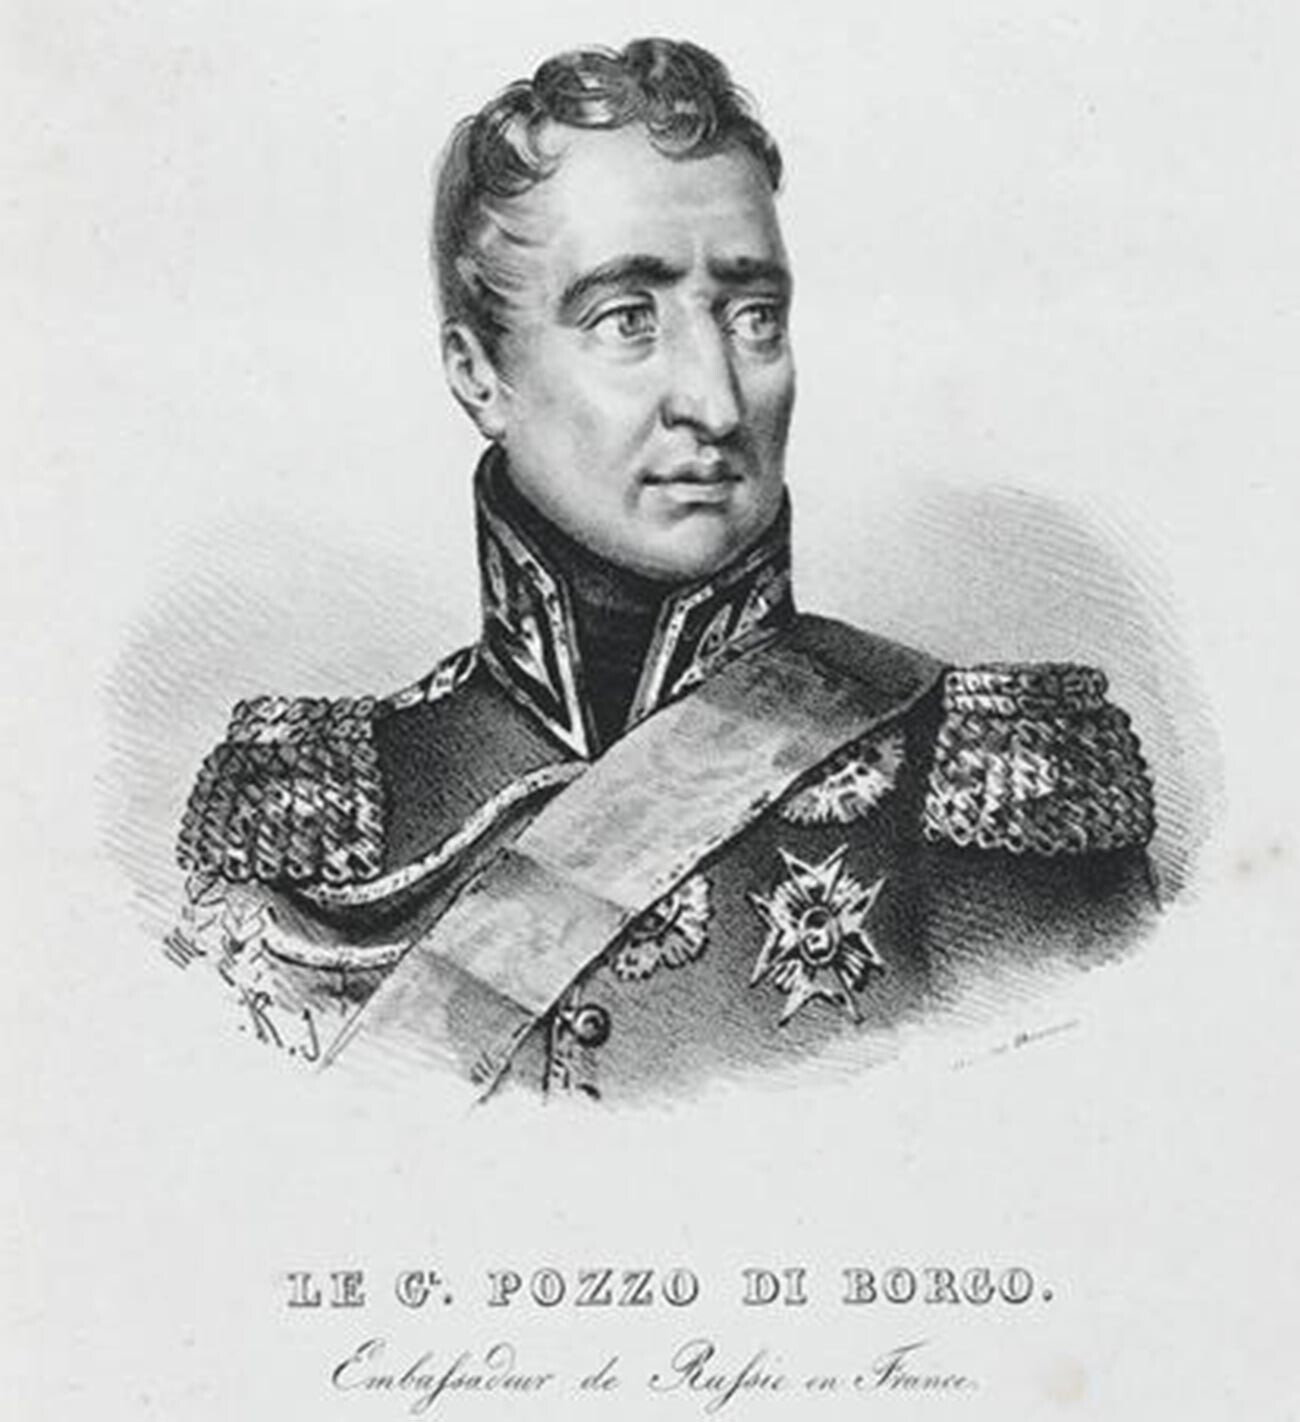 Charles-André Pozzo di Borgo